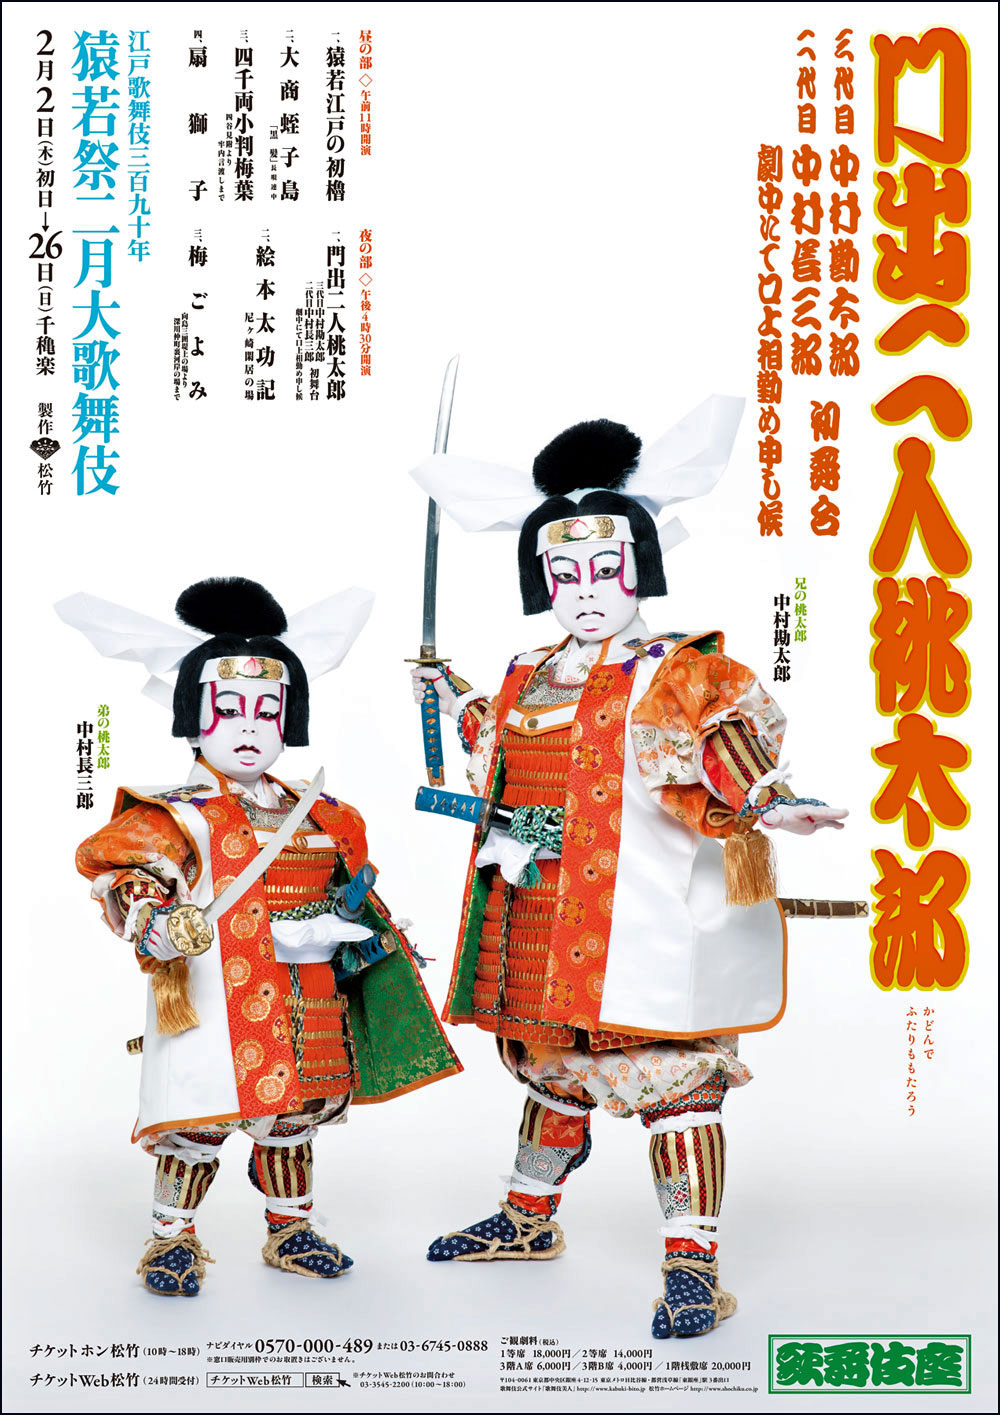 歌舞伎座「猿若祭二月大歌舞伎」特別ポスター